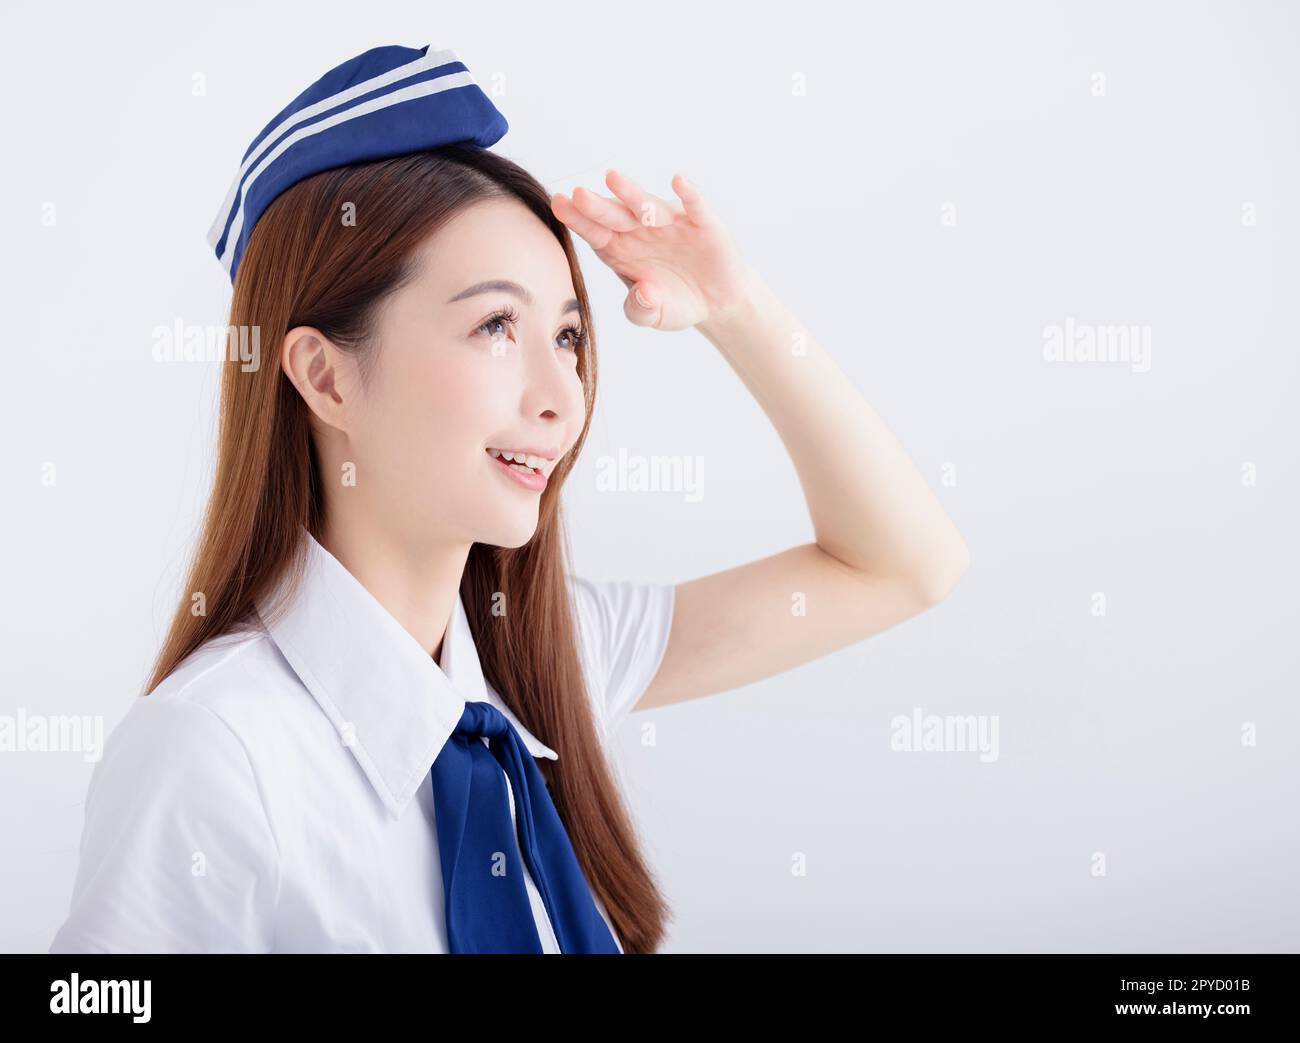 Flugzeugstewardess, junge Frau, die weit weg auf Weiß blickt Stockfoto